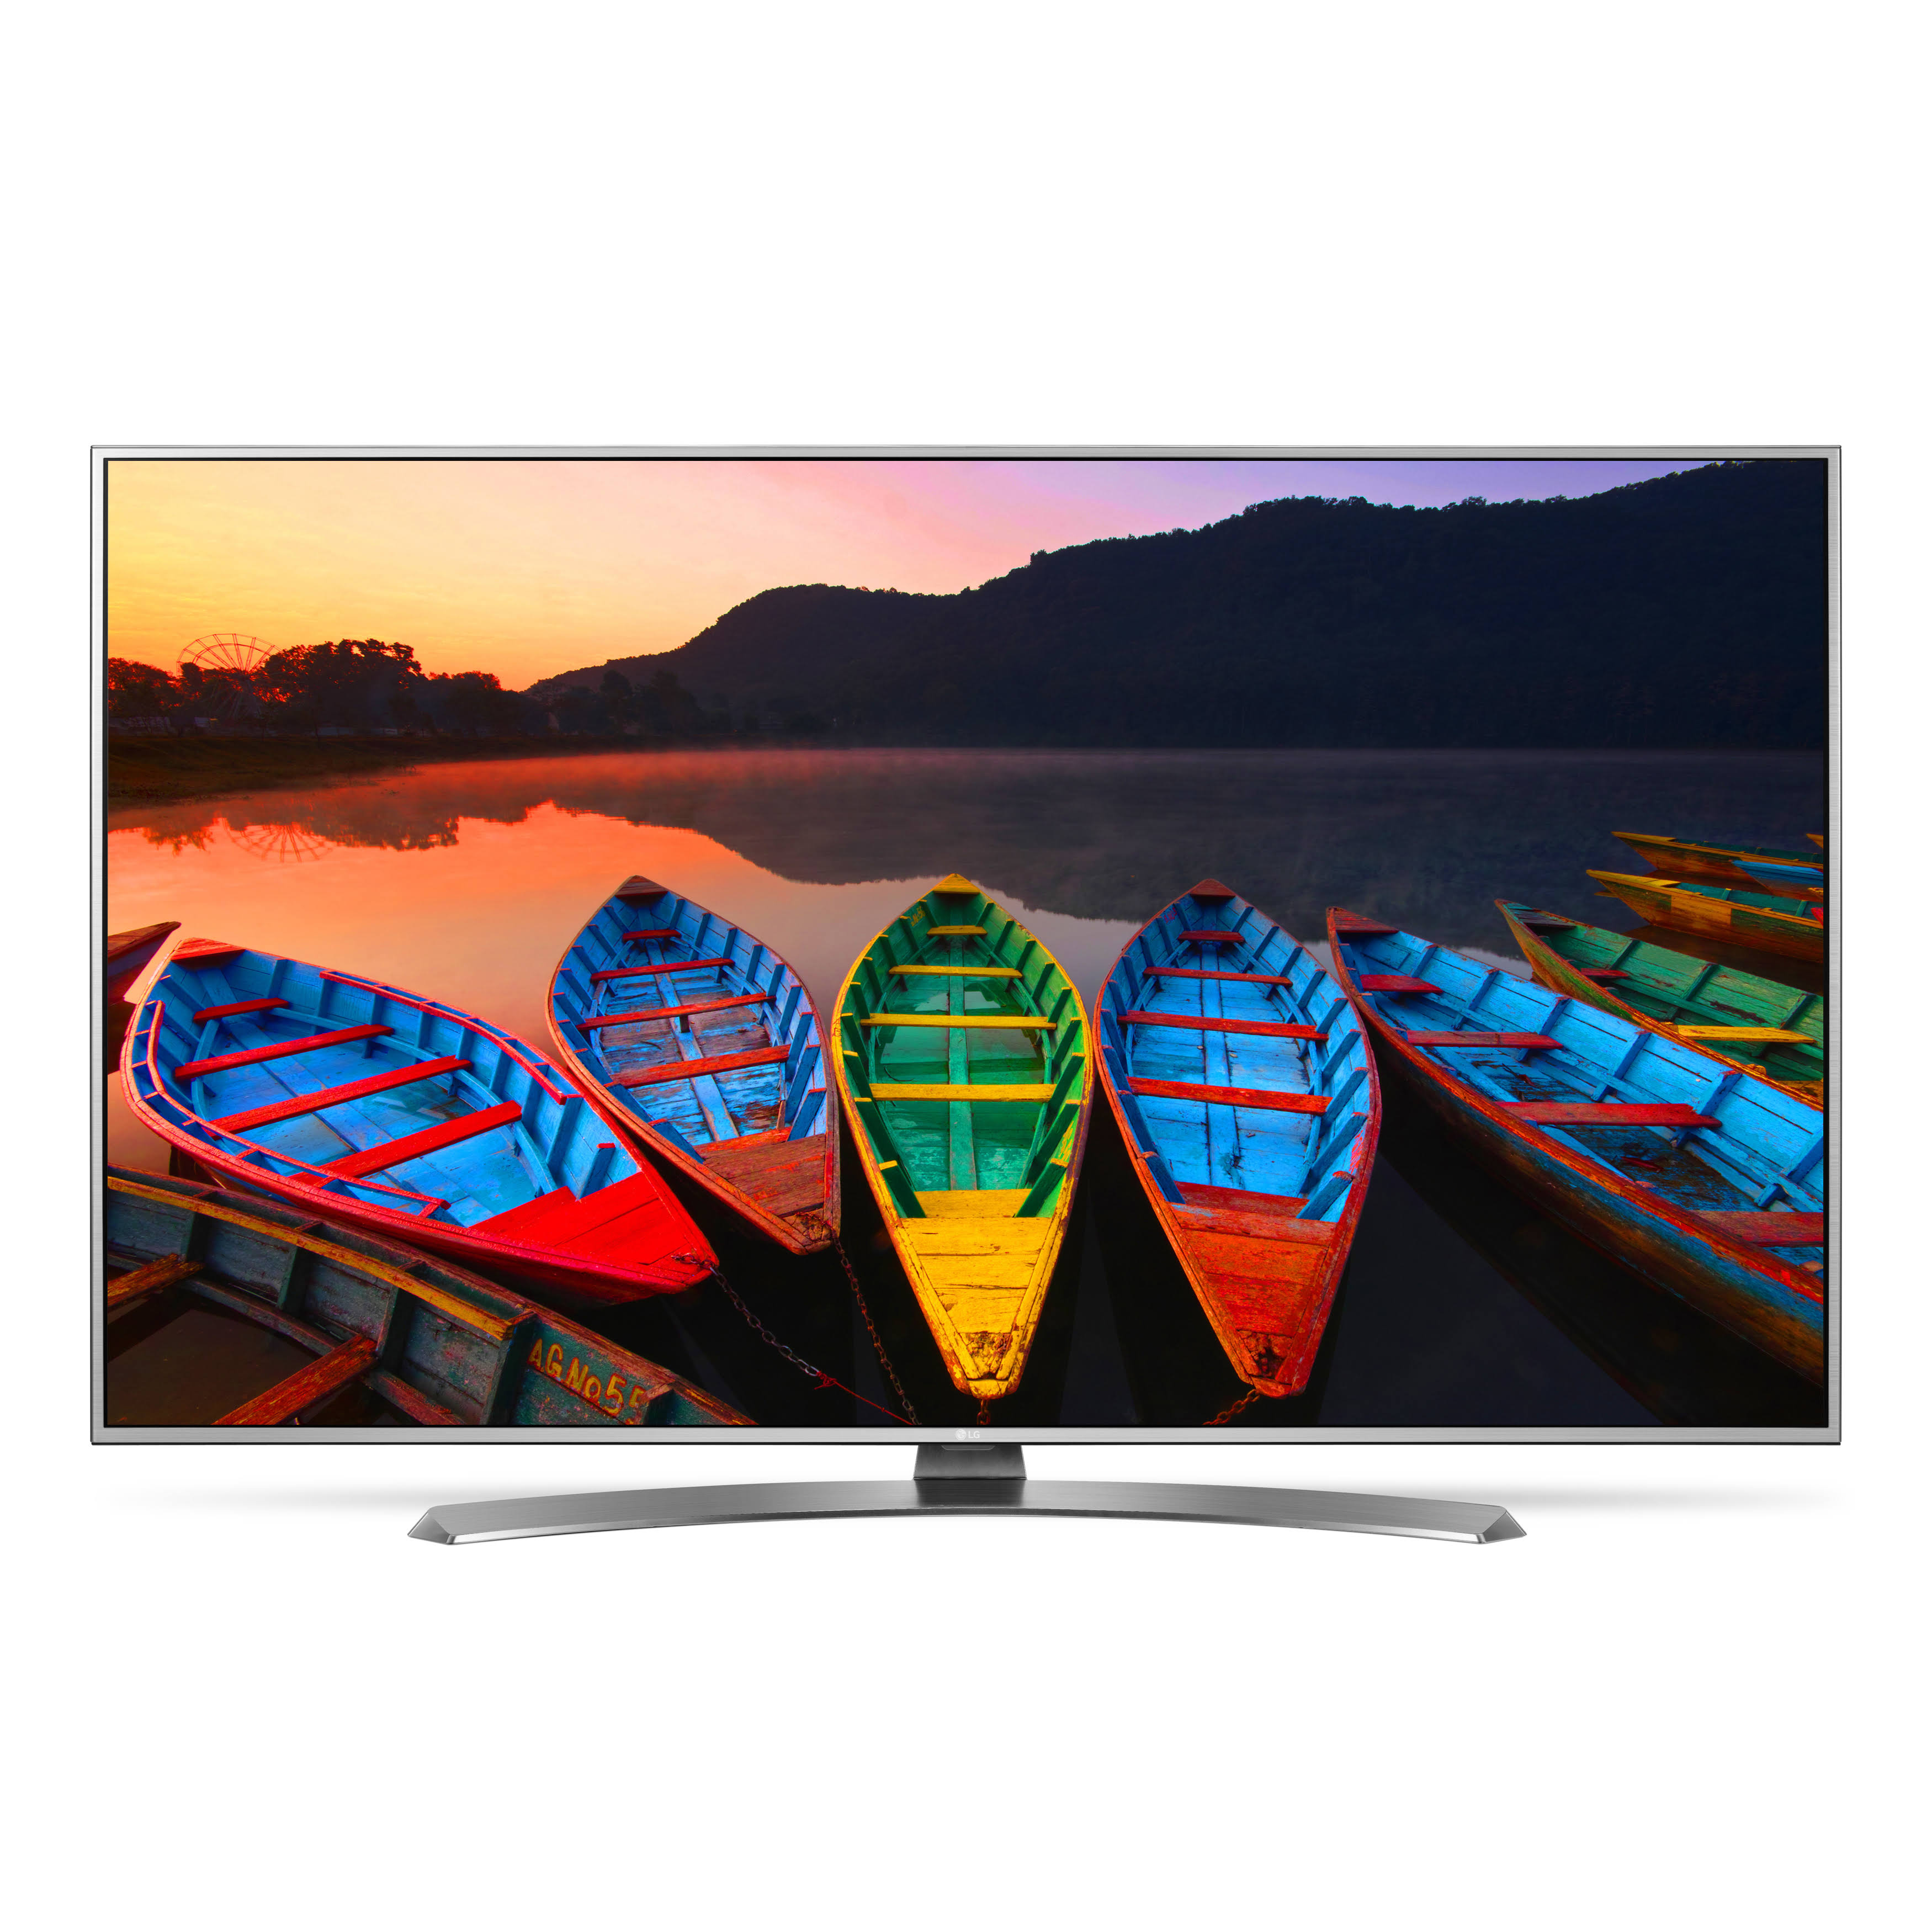 LG Electronics 55UH7700 55-Inch 4K Ultra HD Smart LED TV (2016 Model)